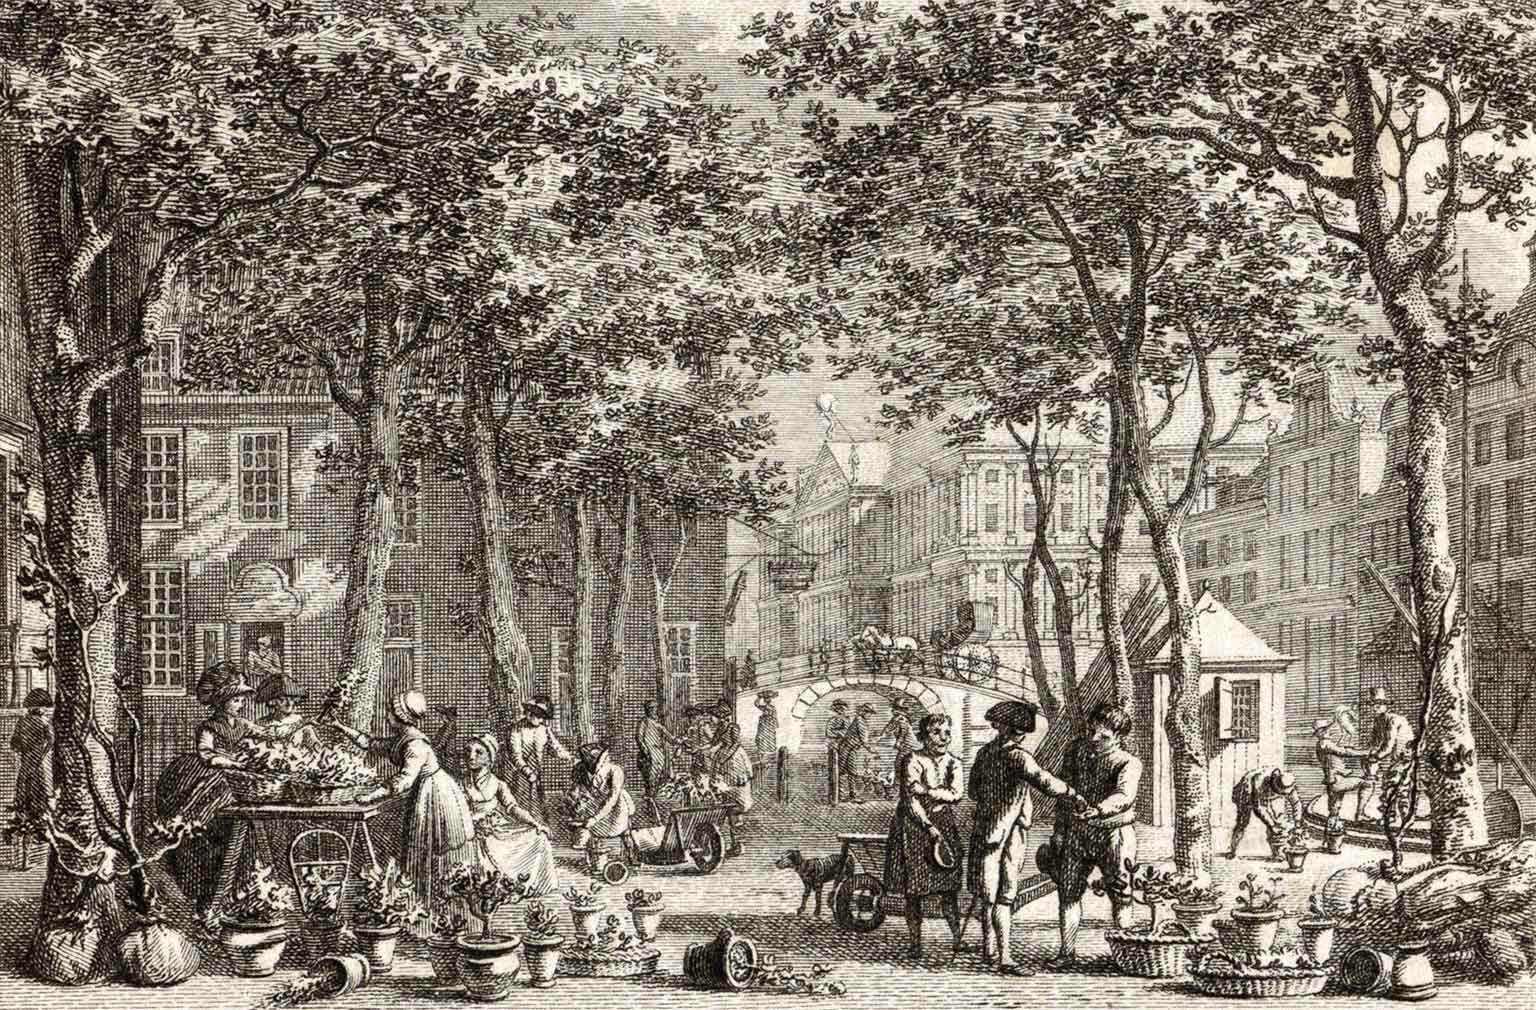 Gravure van de Bloemmarkt op de Nieuwezijds Voorburgwal, Amsterdam, rond 1800